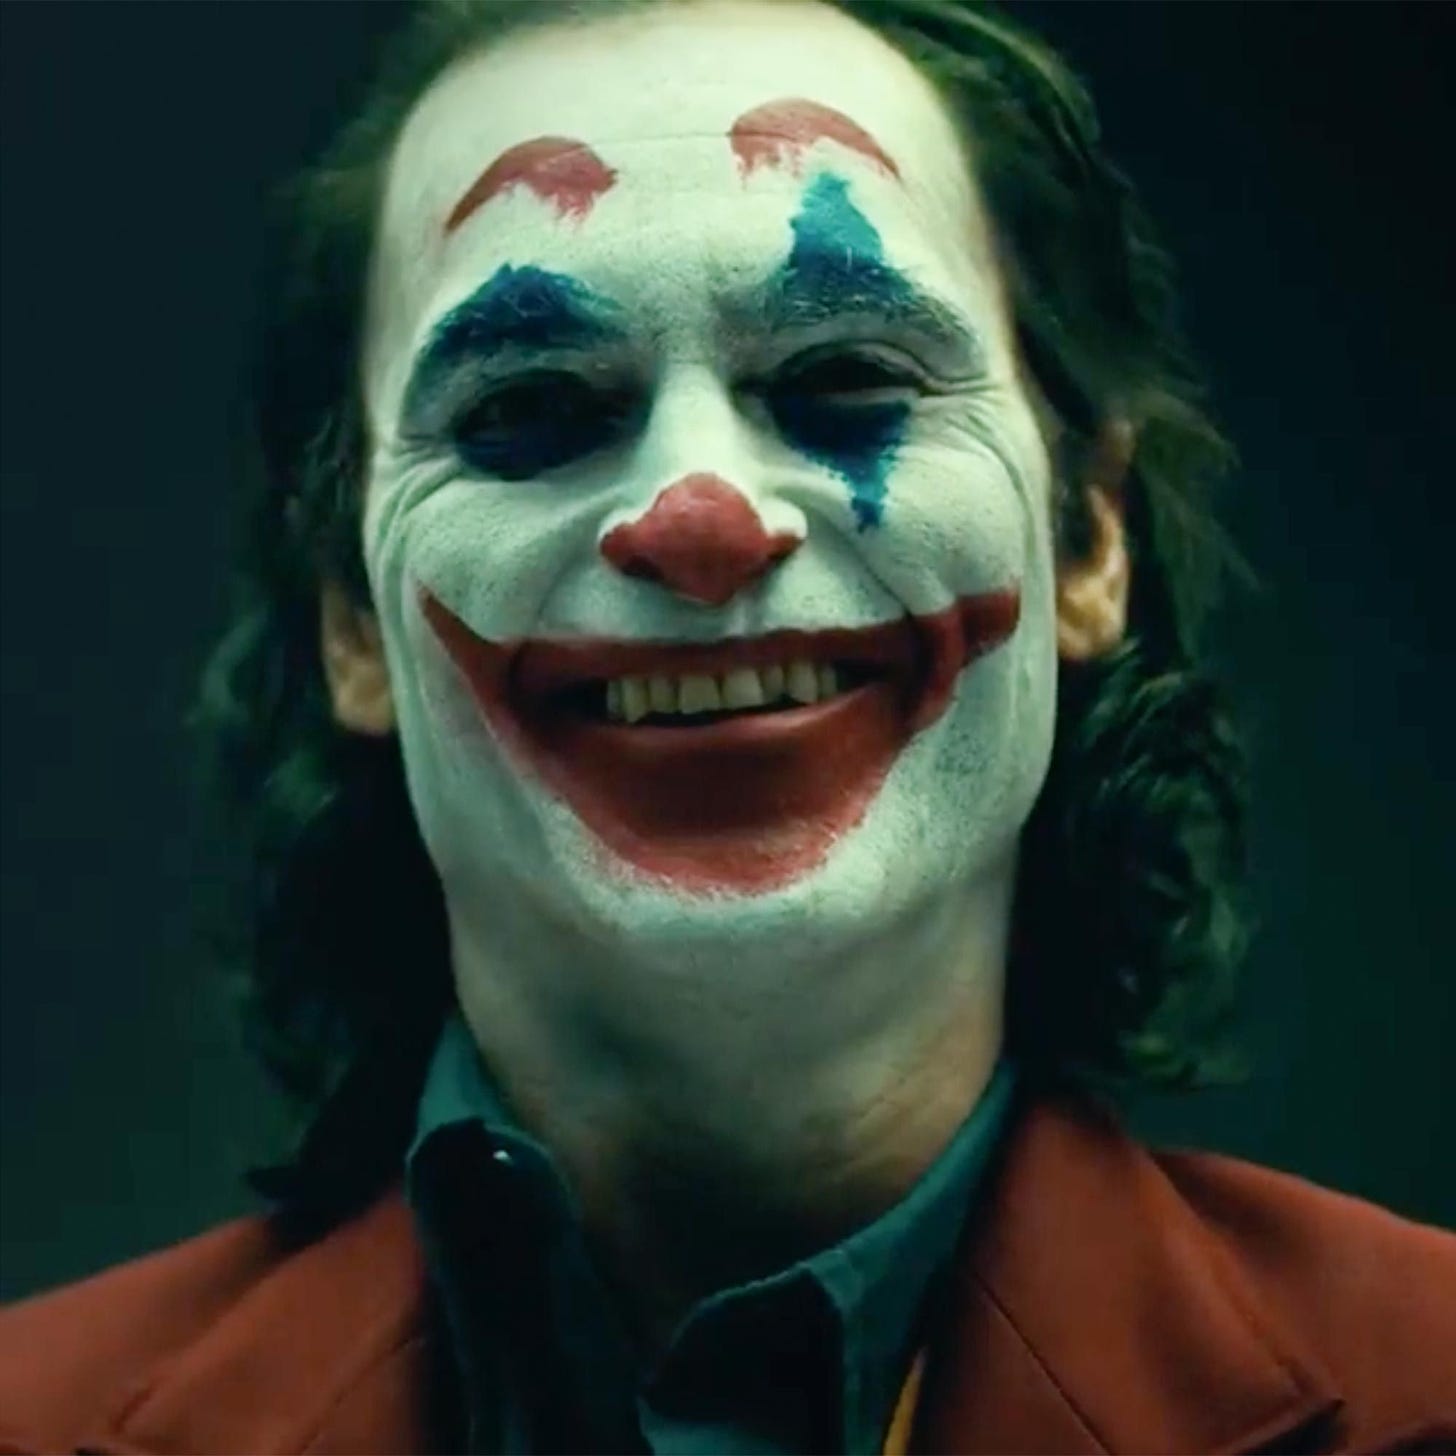 Joaquin Phoenixs Joker revealed in full makeup for first time | Joker film,  Joker smile, New joker movie